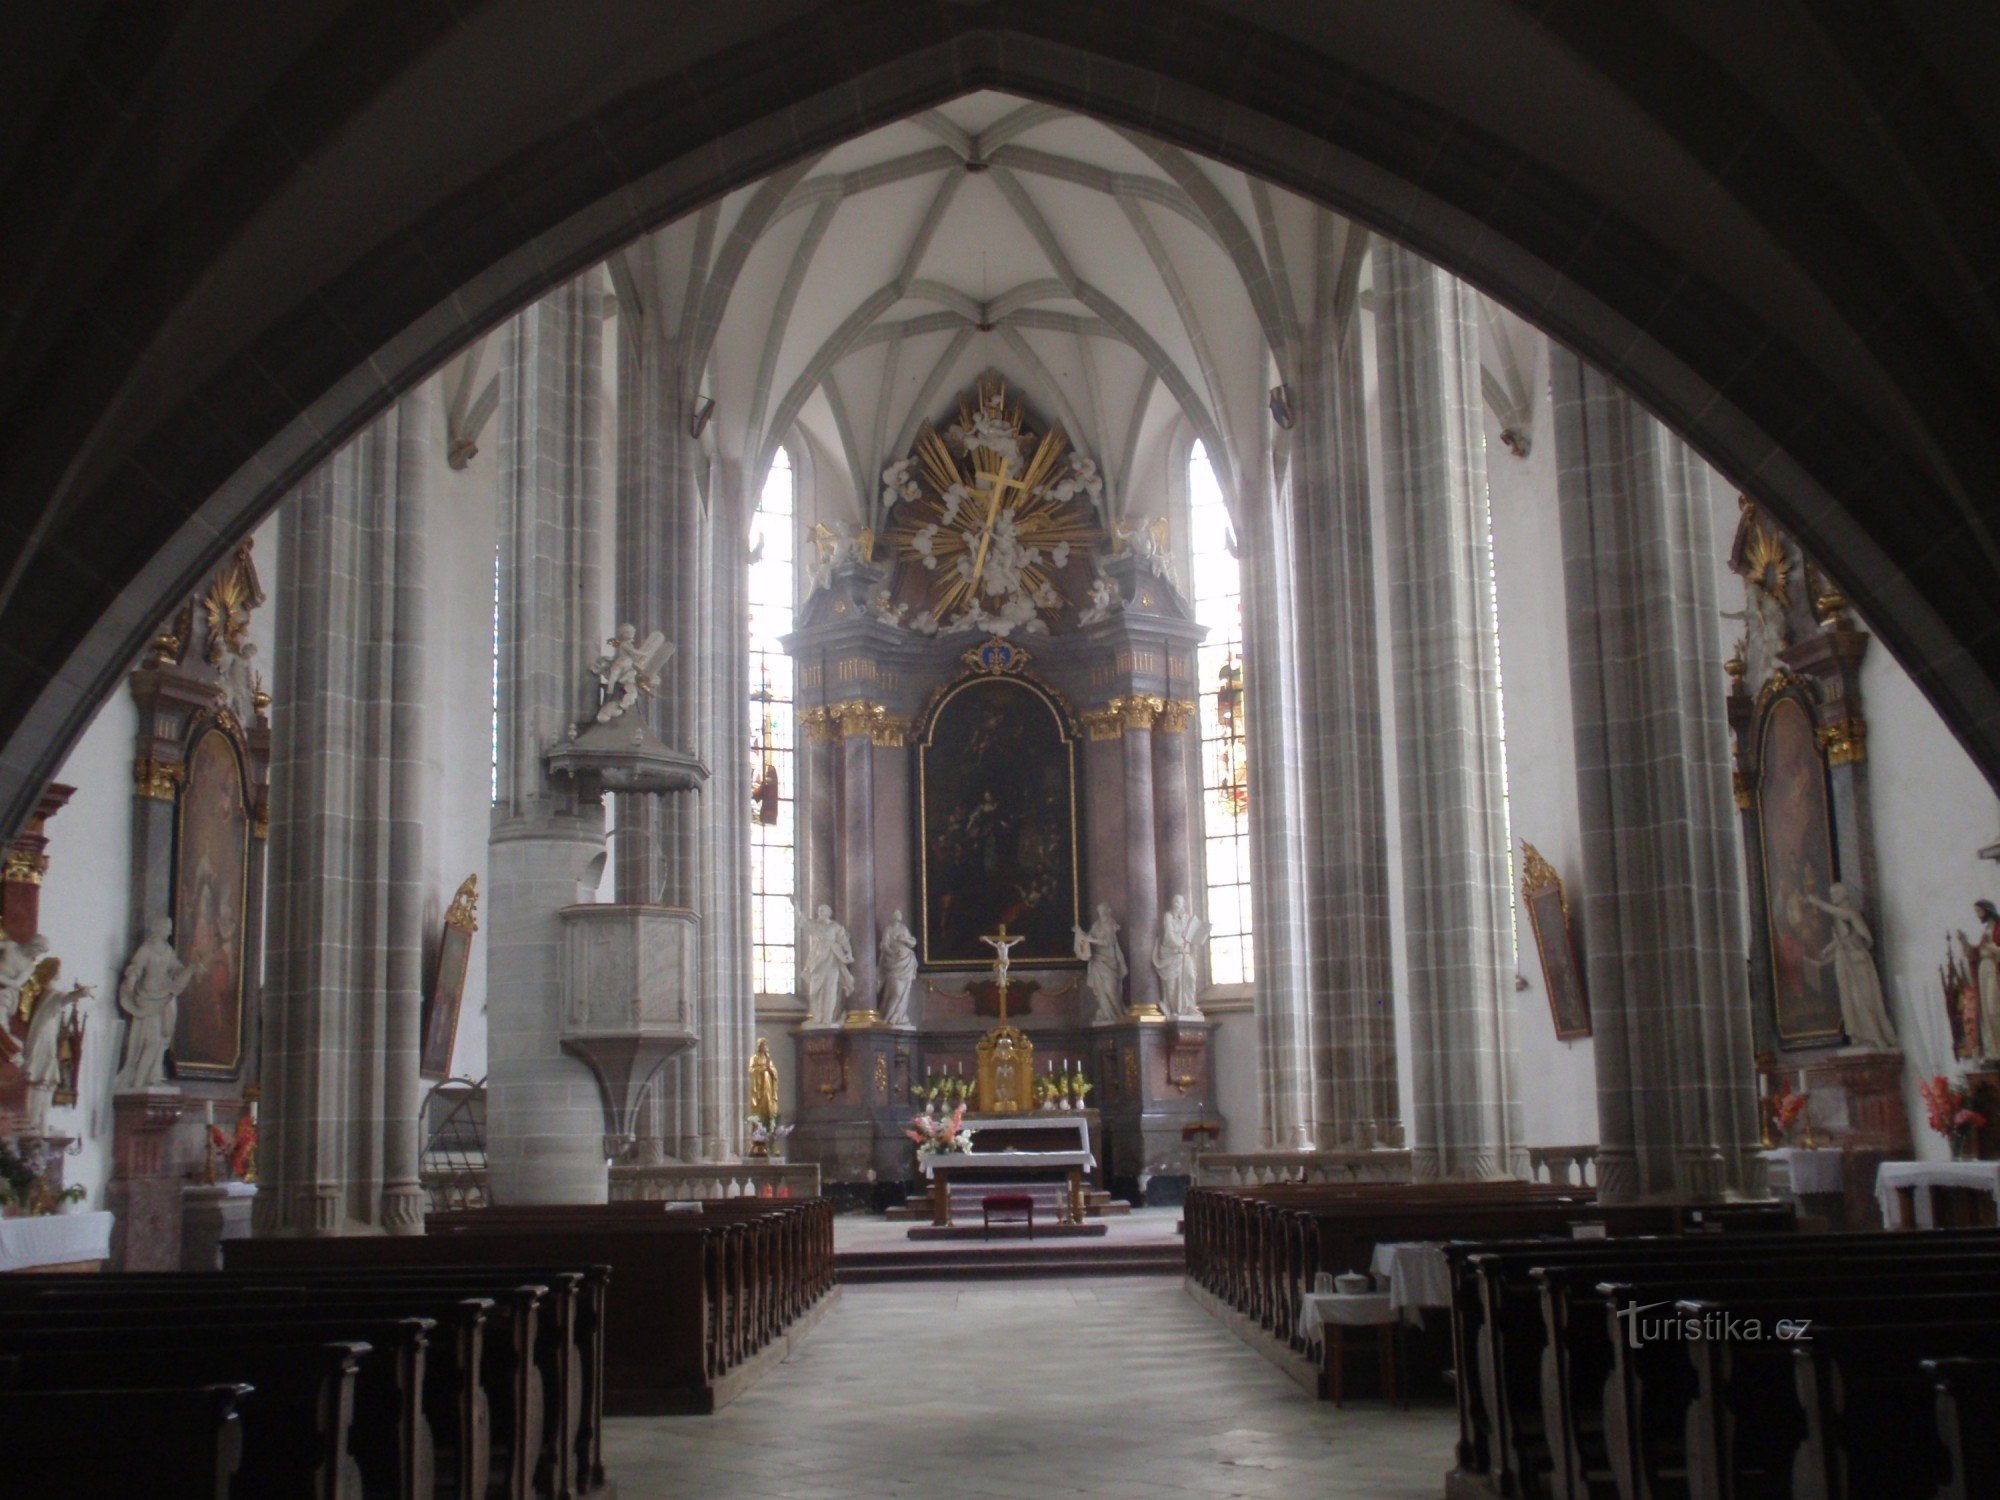 Εκκλησία της εύρεσης του Αγ. Σταυροί στο Doubravník - εσωτερικό